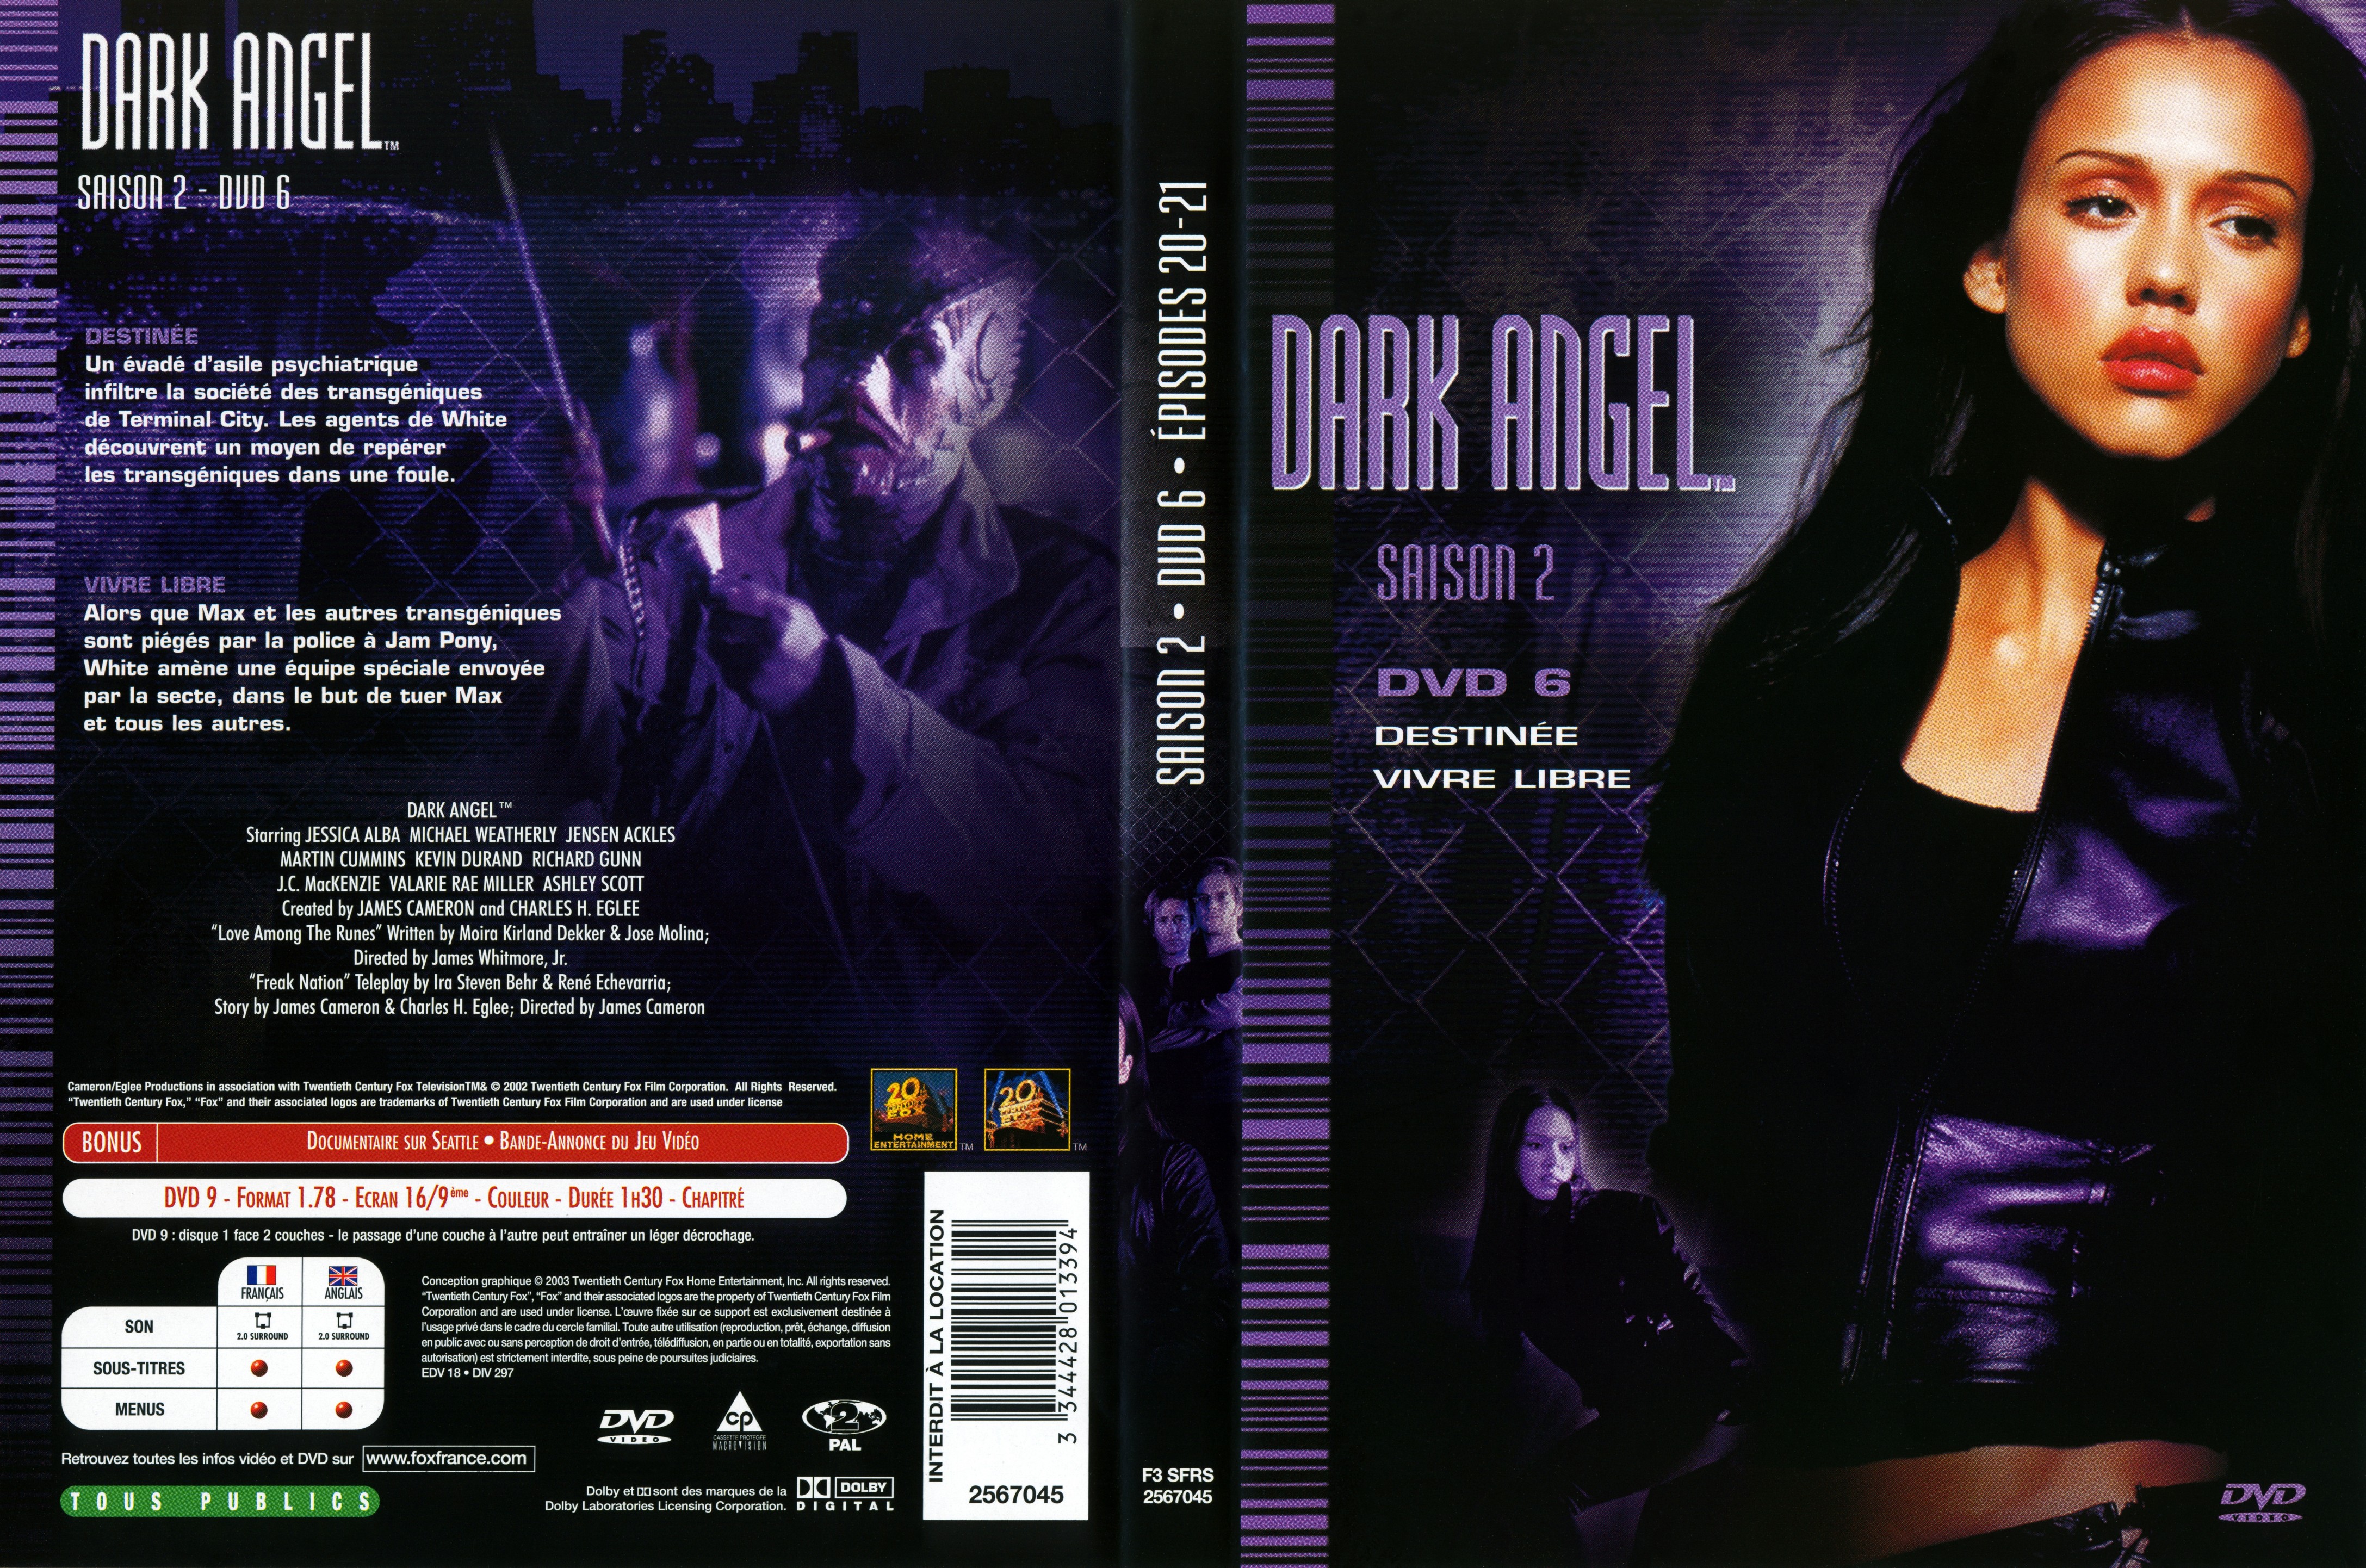 Jaquette DVD Dark Angel Saison 2 DVD 6